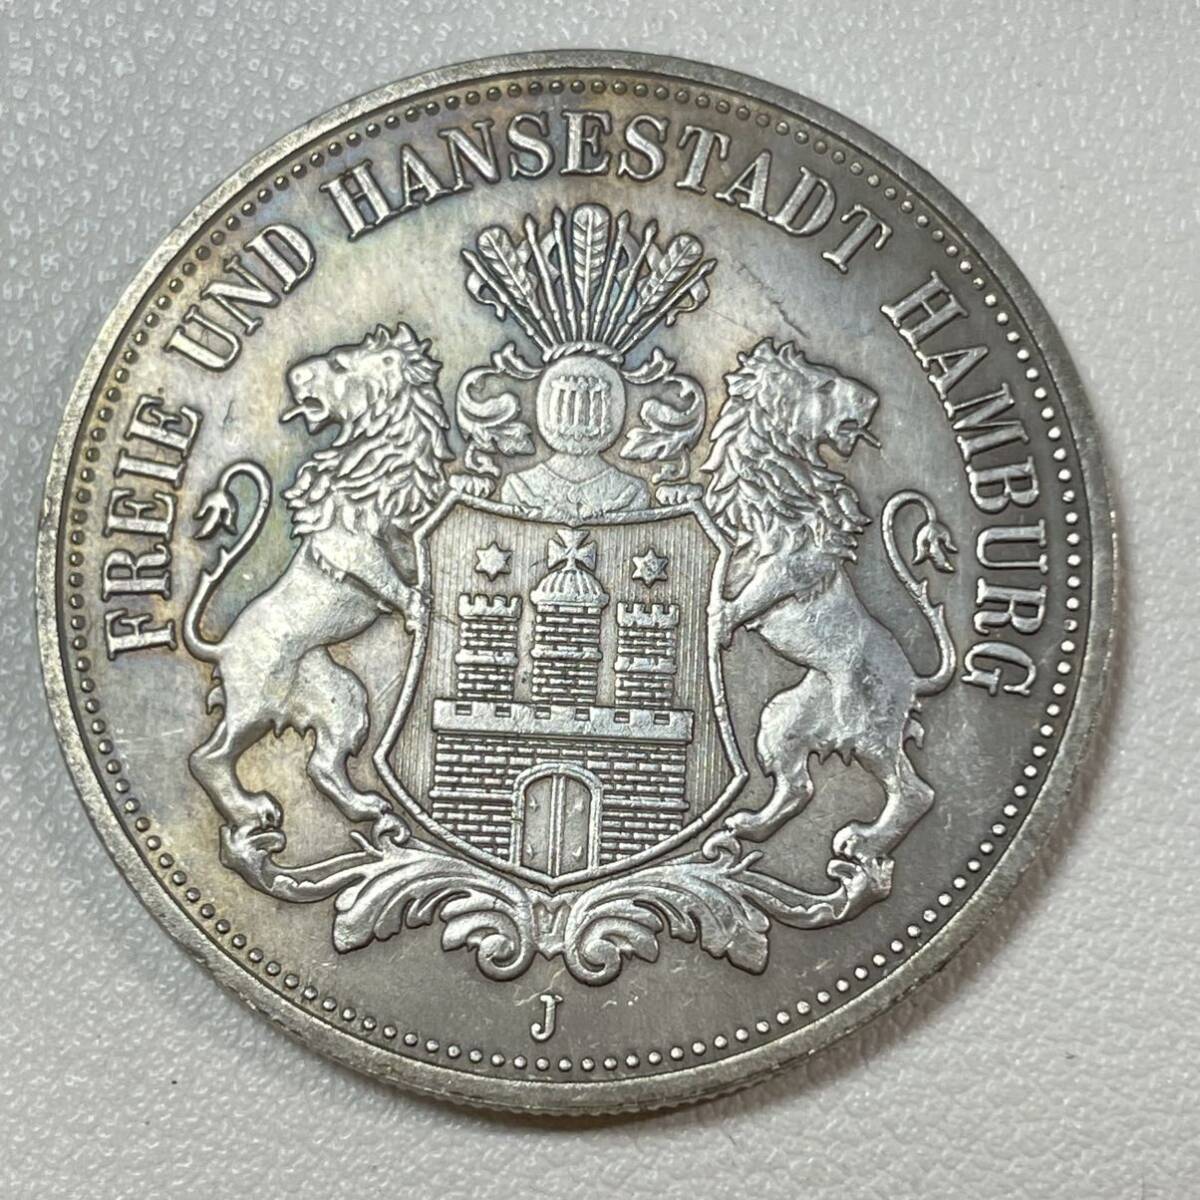 ドイツ 硬貨 古銭 ハンブルク州 1896年 ハンブルク州紋章 キャット・キャッスル マルク 国章 双頭の鷲 コイン 重20.40g 銀貨_画像1